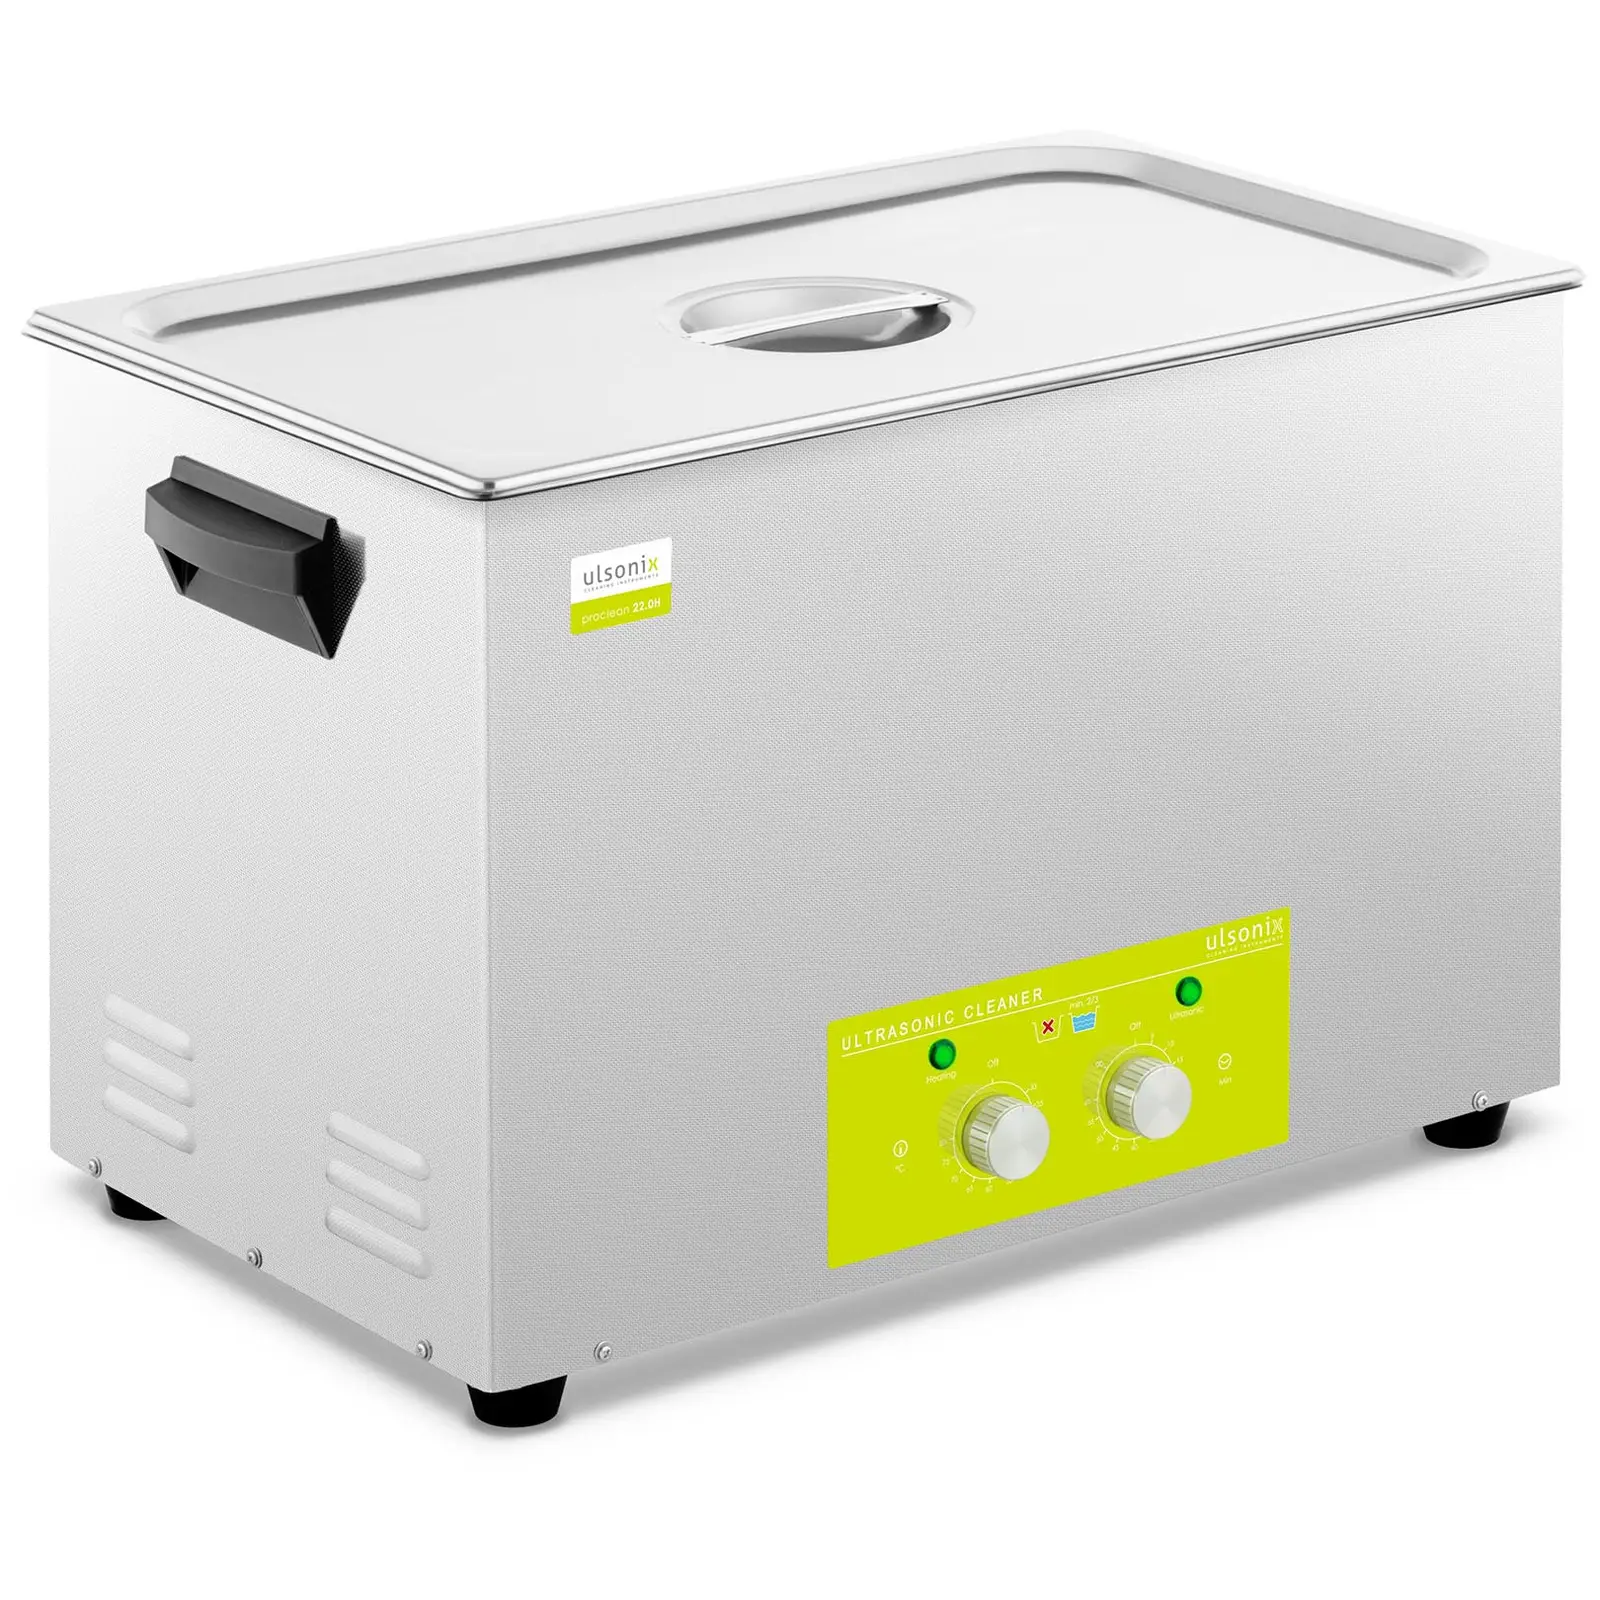 Ultrahangos tisztító - 22 liter - 360 W | ulsonix